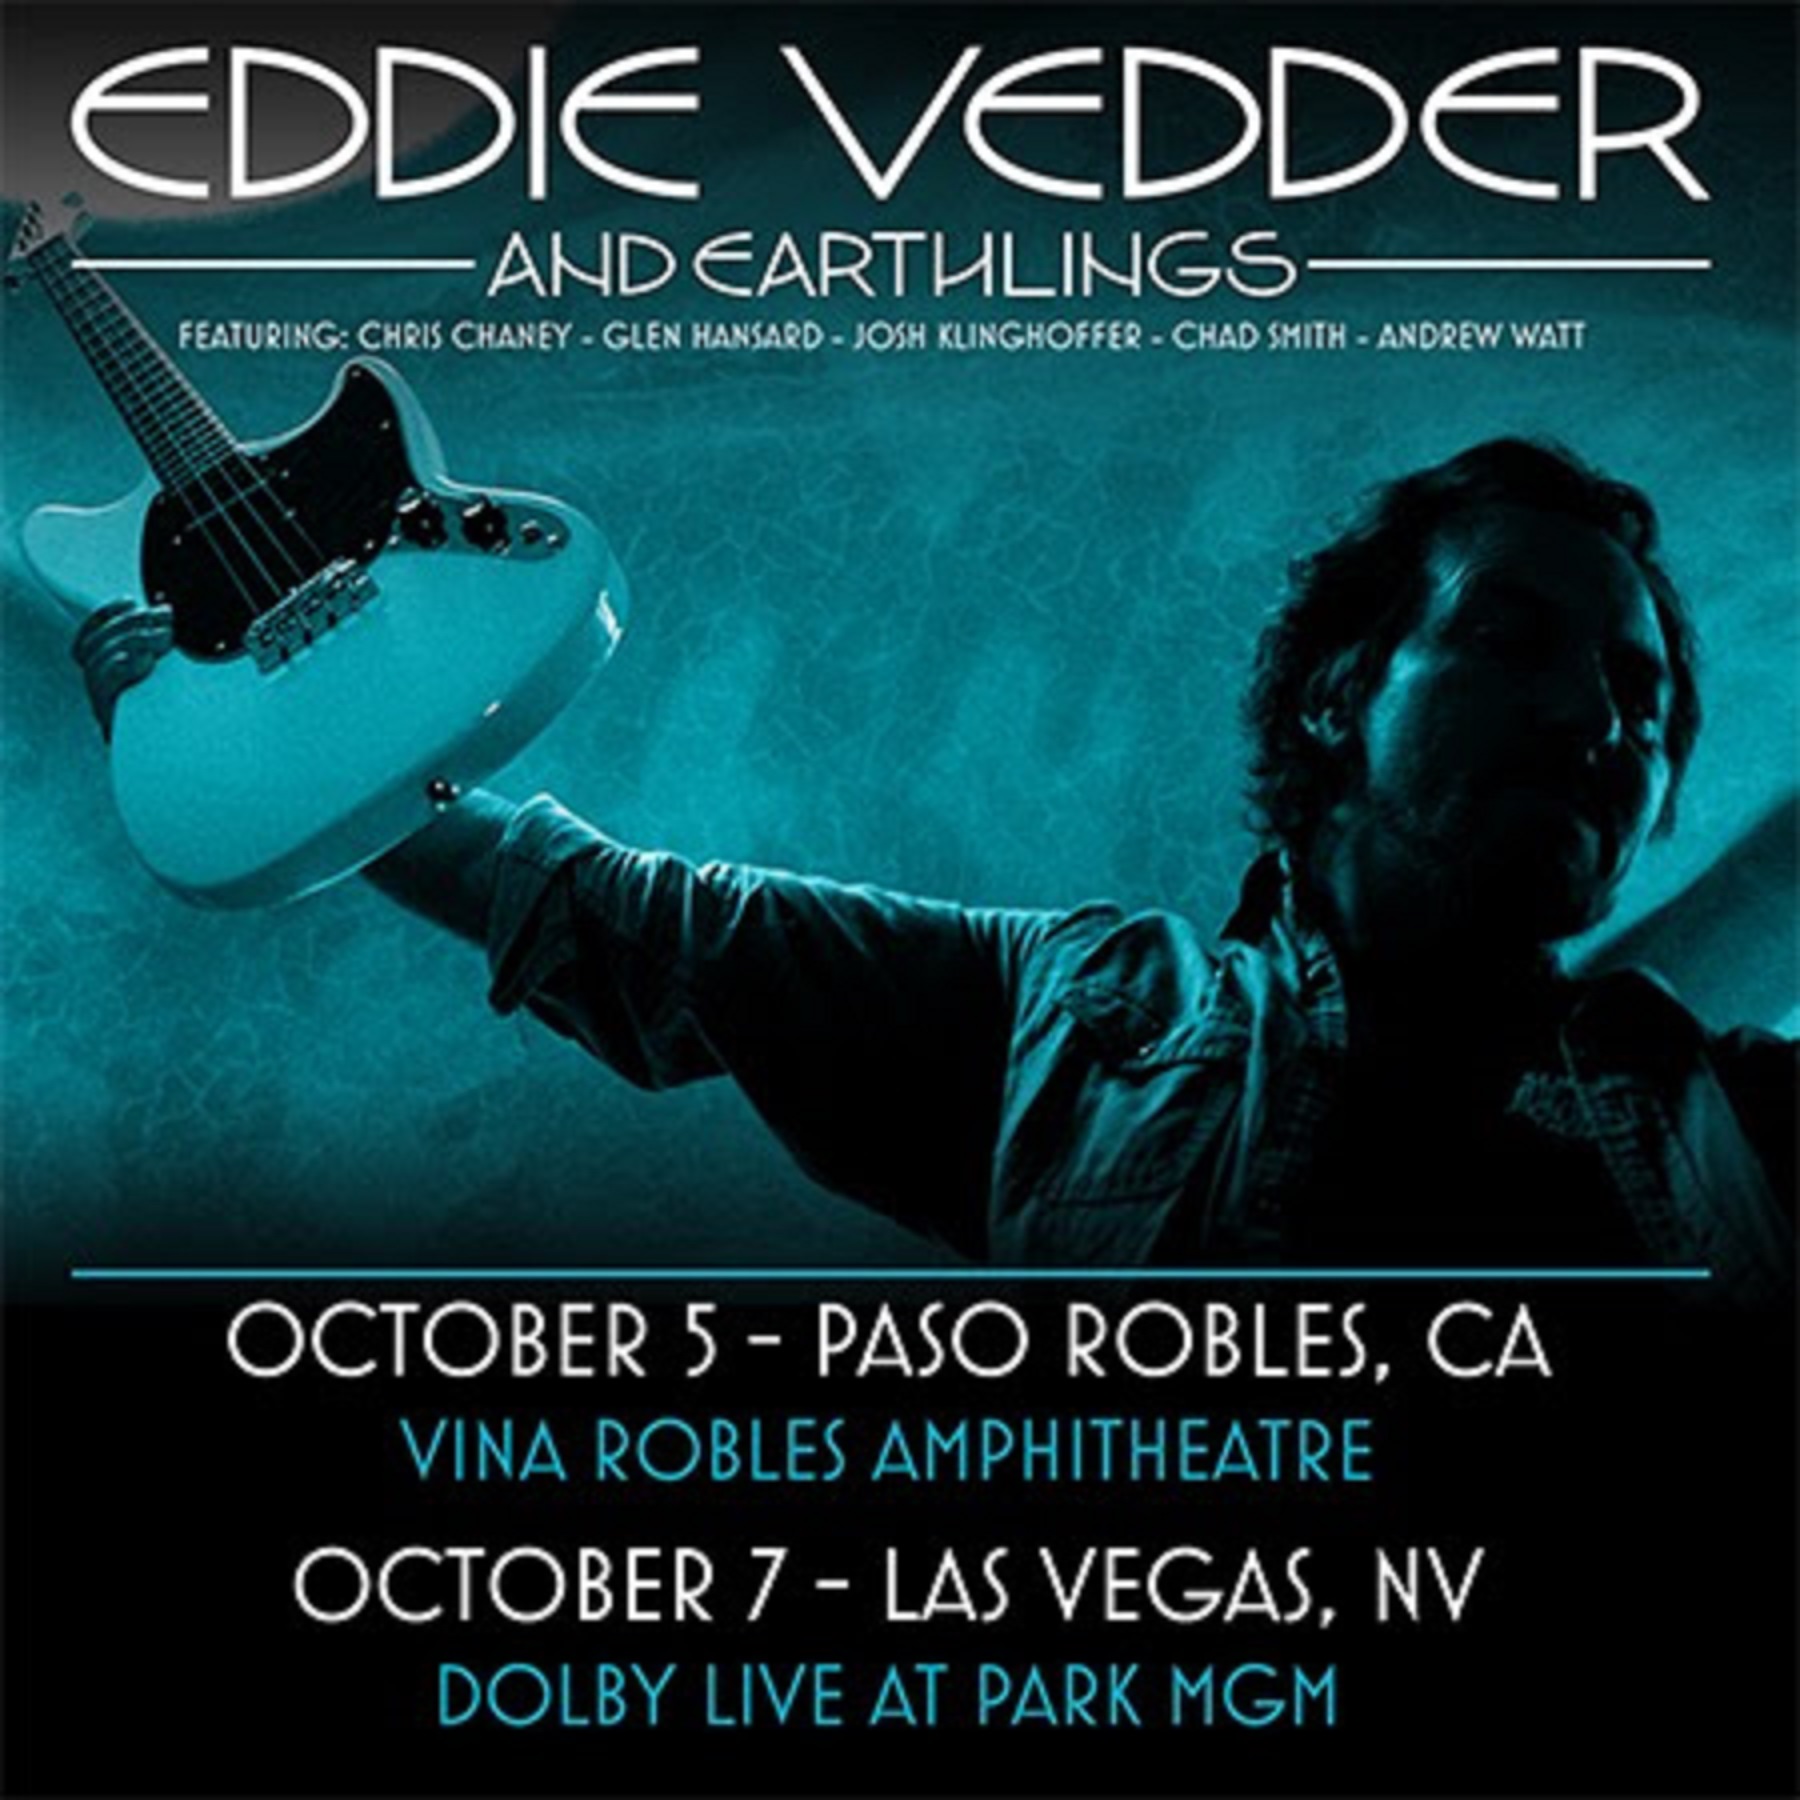 New Eddie Vedder Earthlings Dates